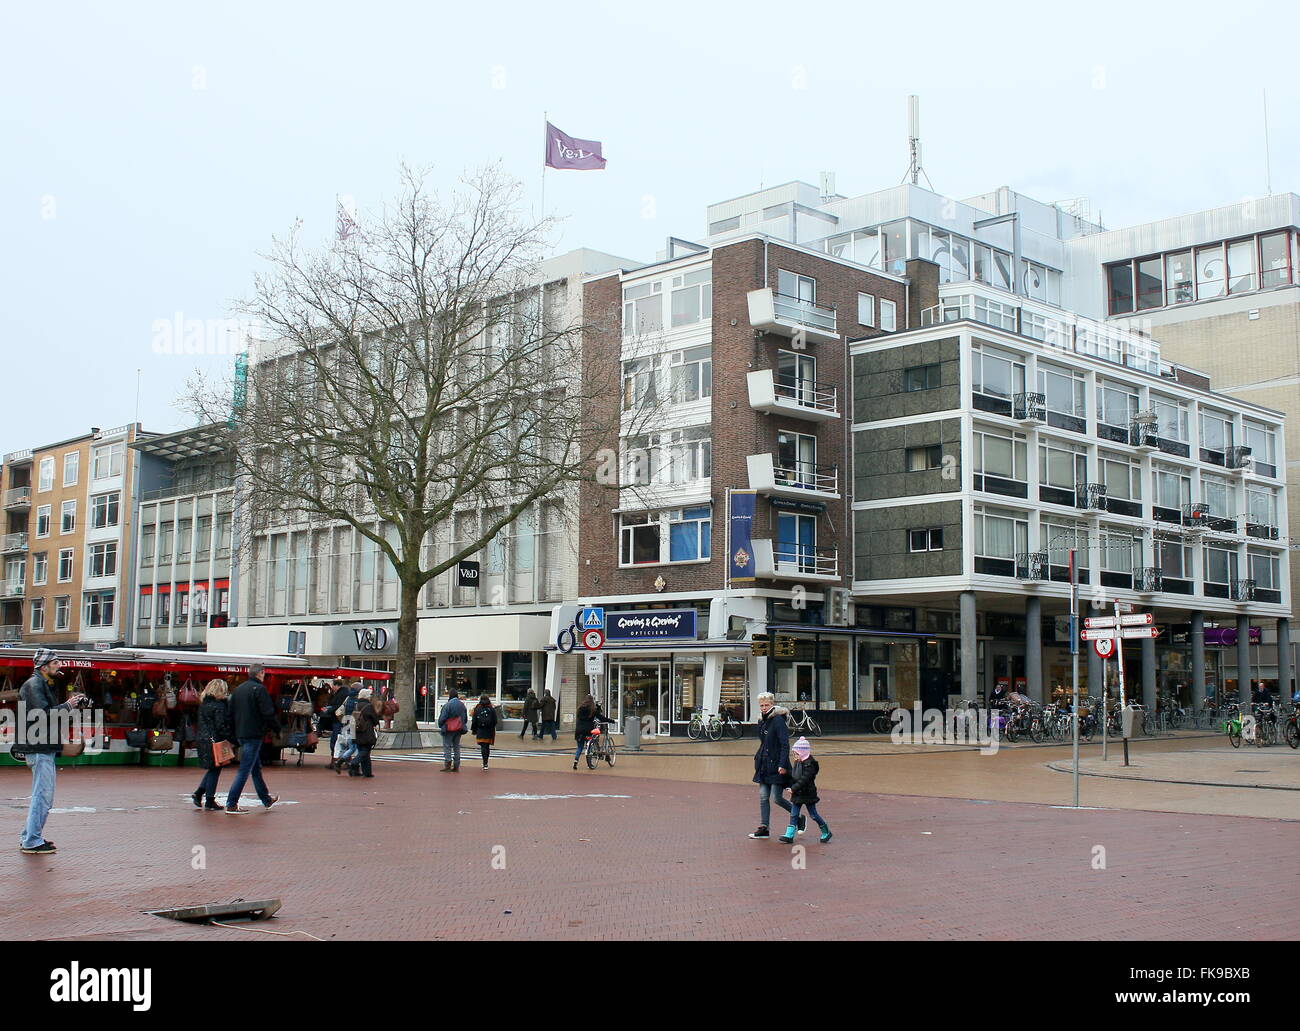 V&D department store (Vroom & Dreesman) sur Grote Markt, Groningen, Pays-Bas. Banktruptcy en février 2016 Banque D'Images